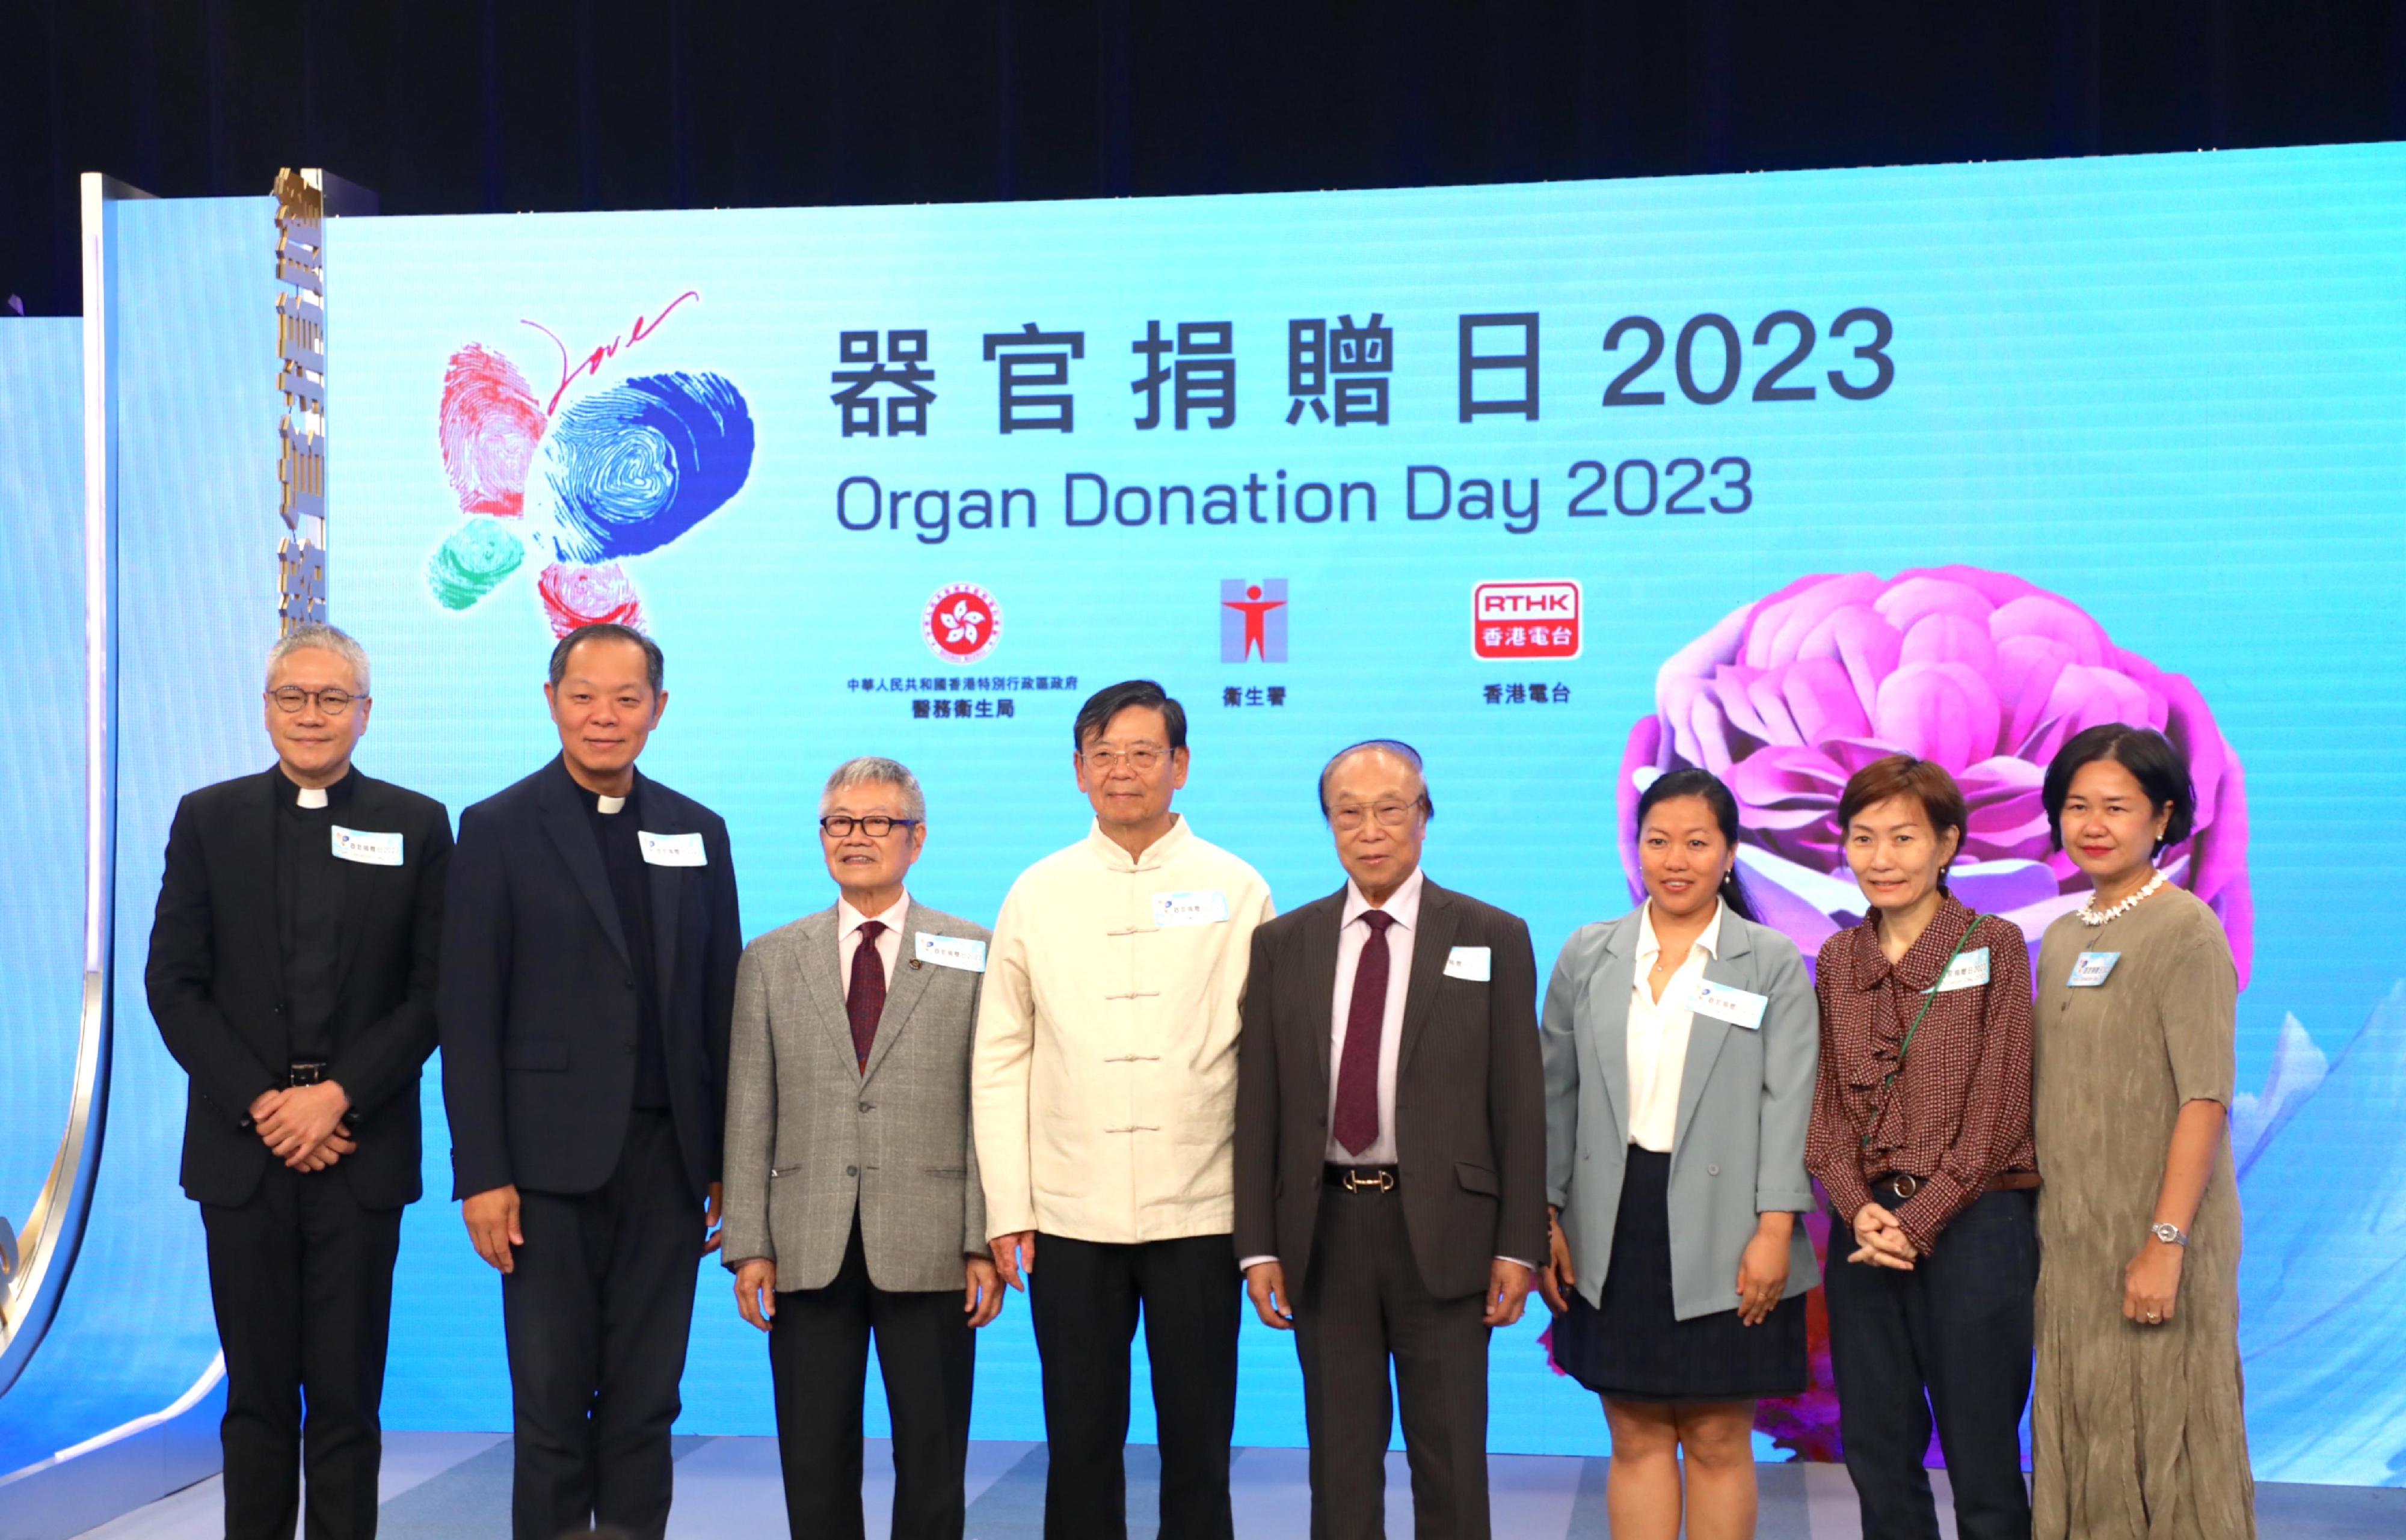 「器官捐贈日 2023」慶祝活動今日（十一月十一日）邀得五個宗教組織及不同少數族裔的代表參與，以表達不同宗教及少數族裔對器官捐贈的支持。